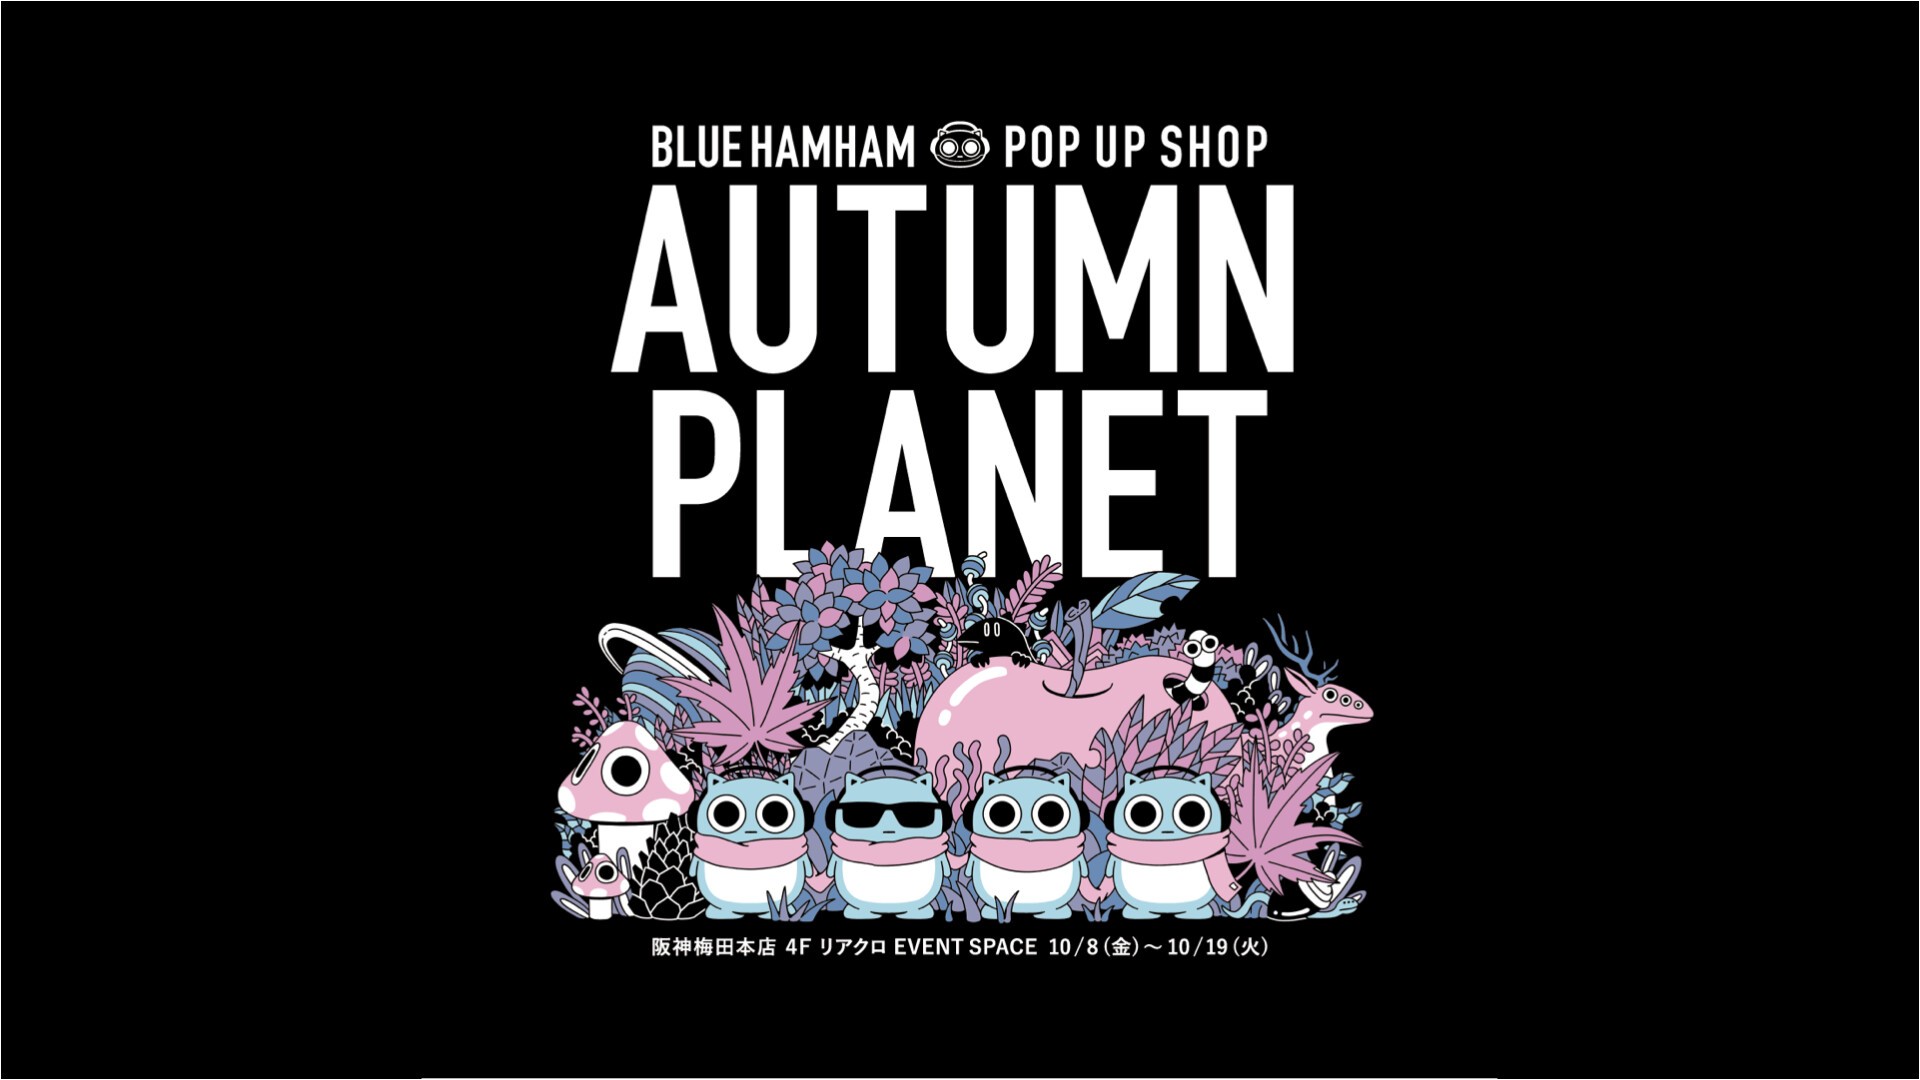 Iflyer Blue Hamham ブルーハムハム 10 8 金 にリニューアルオープンする阪神梅田本店4fにて Autumn Planet Blue Hamham Pop Up Shop の開催決定